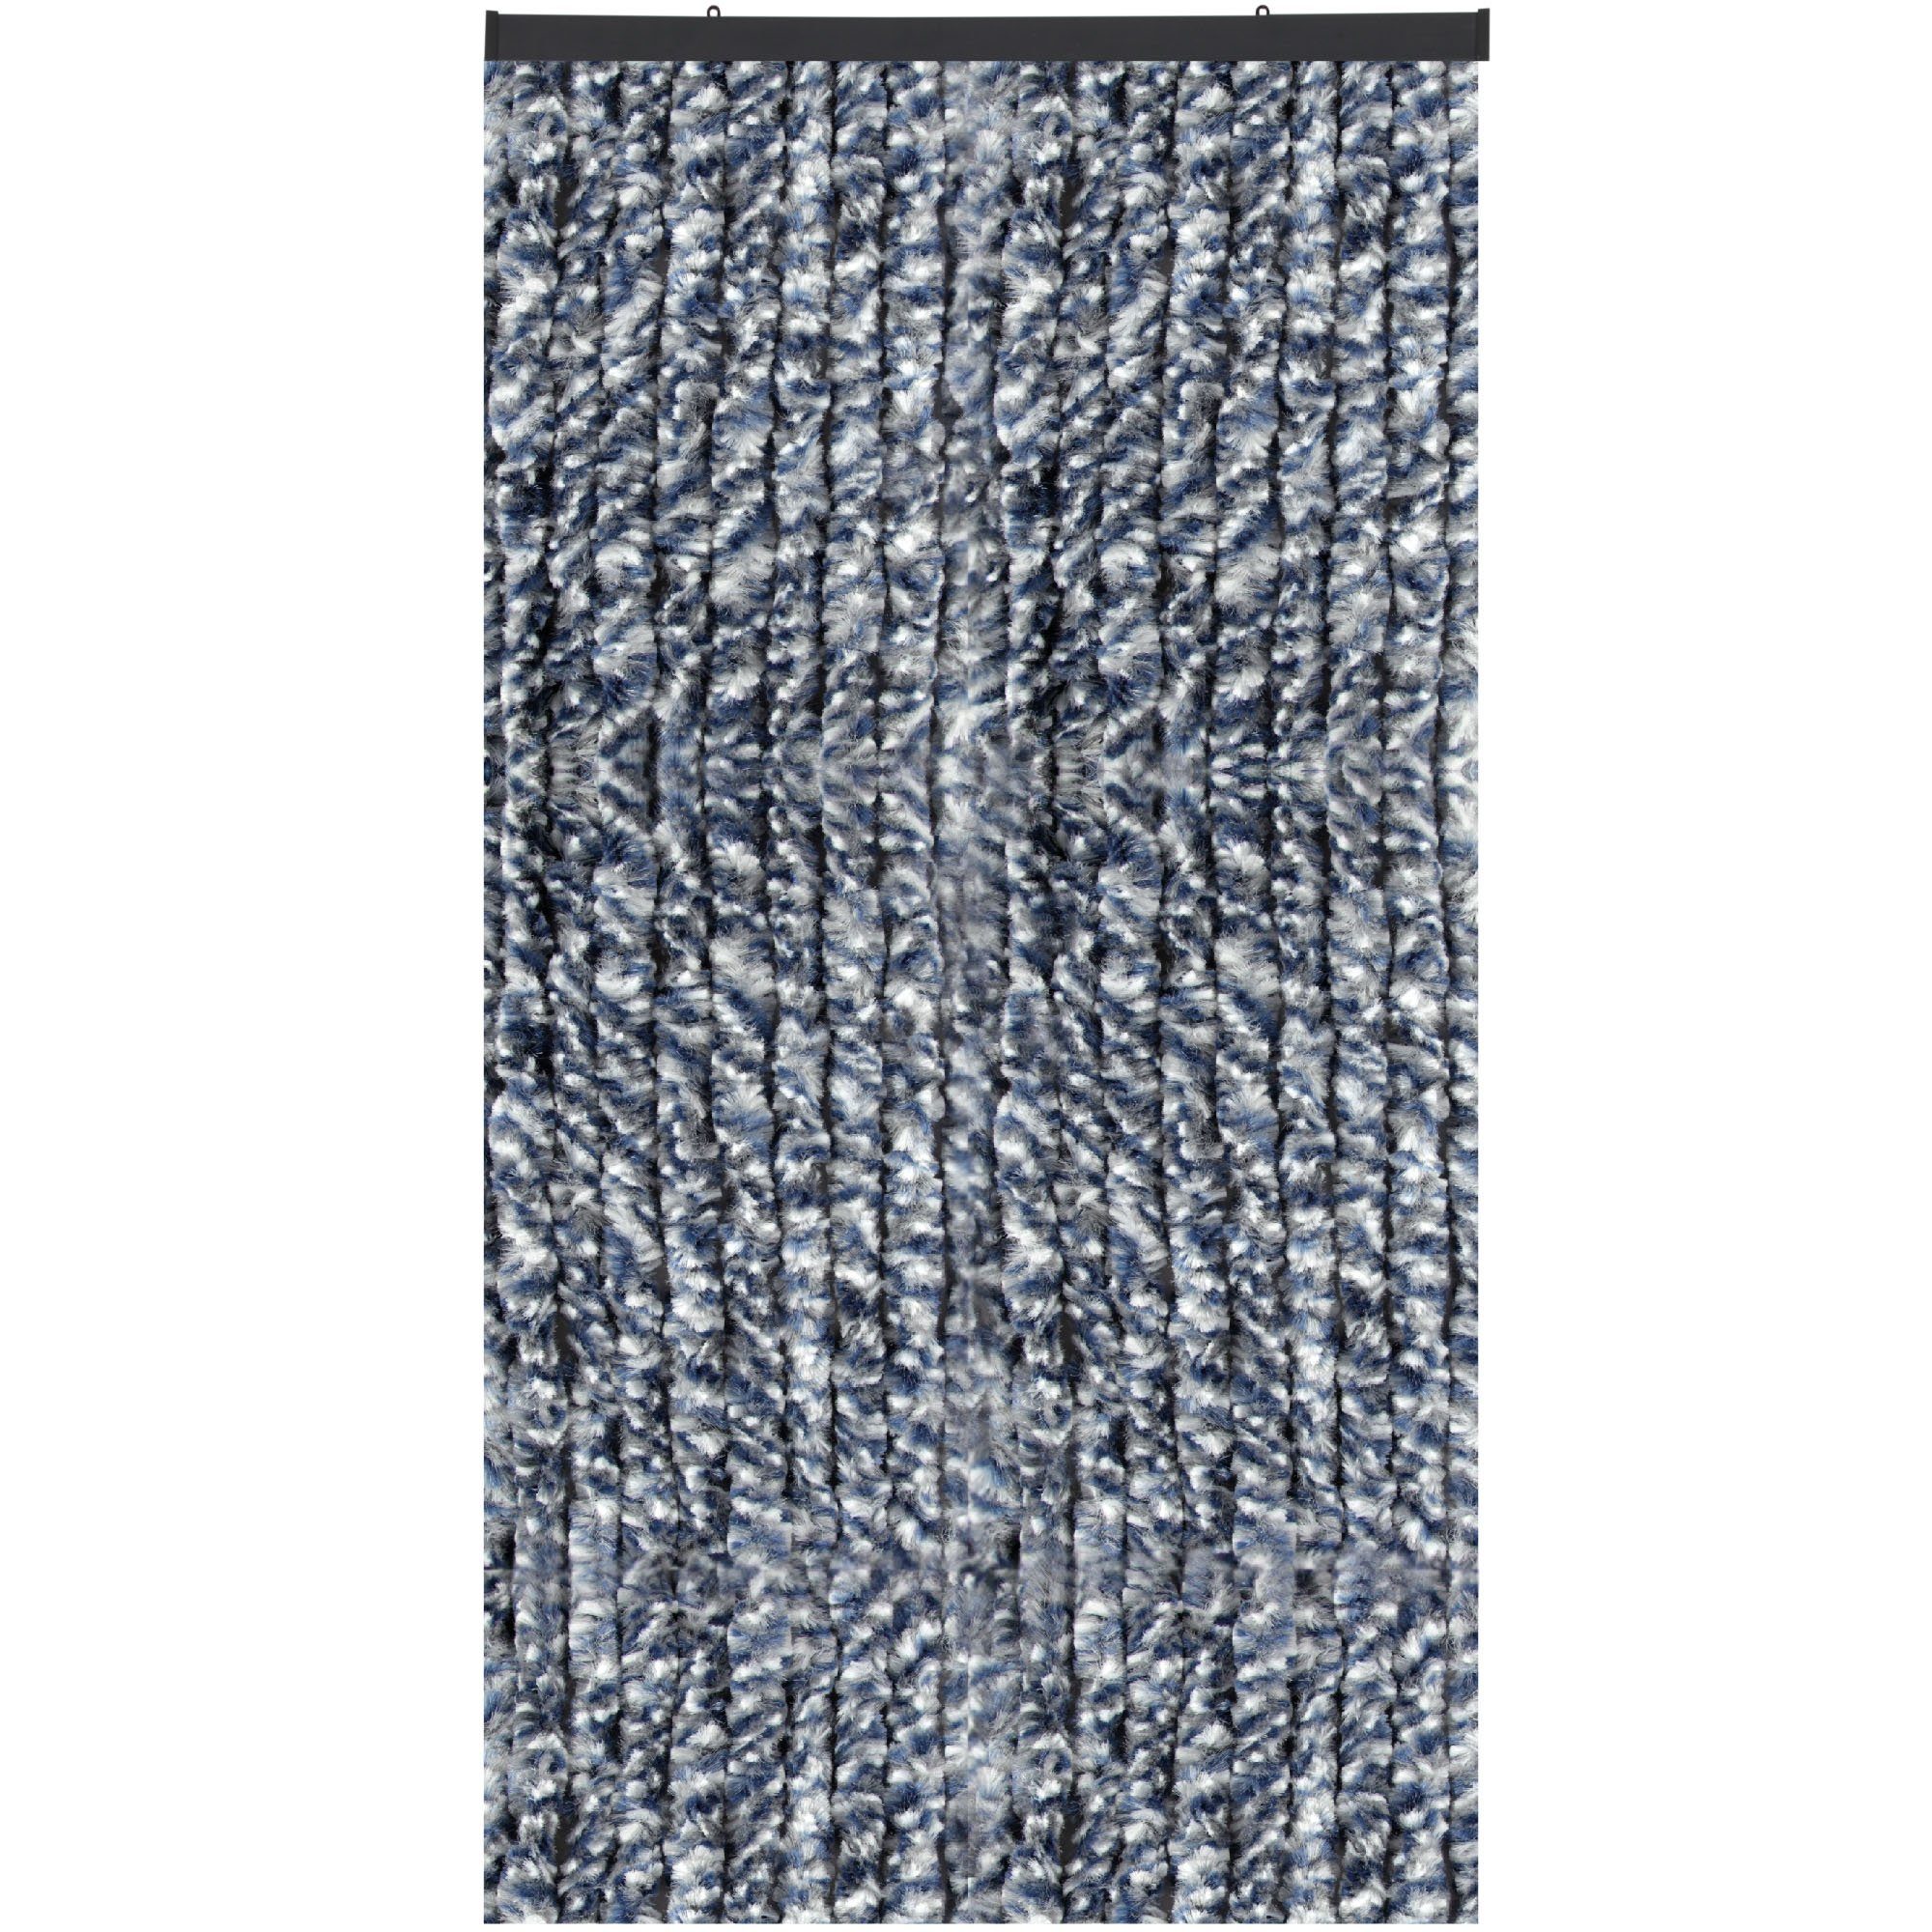 Türvorhang Flauschi, Arsvita, Ösen (1 St), Flauschvorhang 160x185 cm in Meliert blau - weiß - silber, viele Farben Meliert Blau/Weiß/Silber